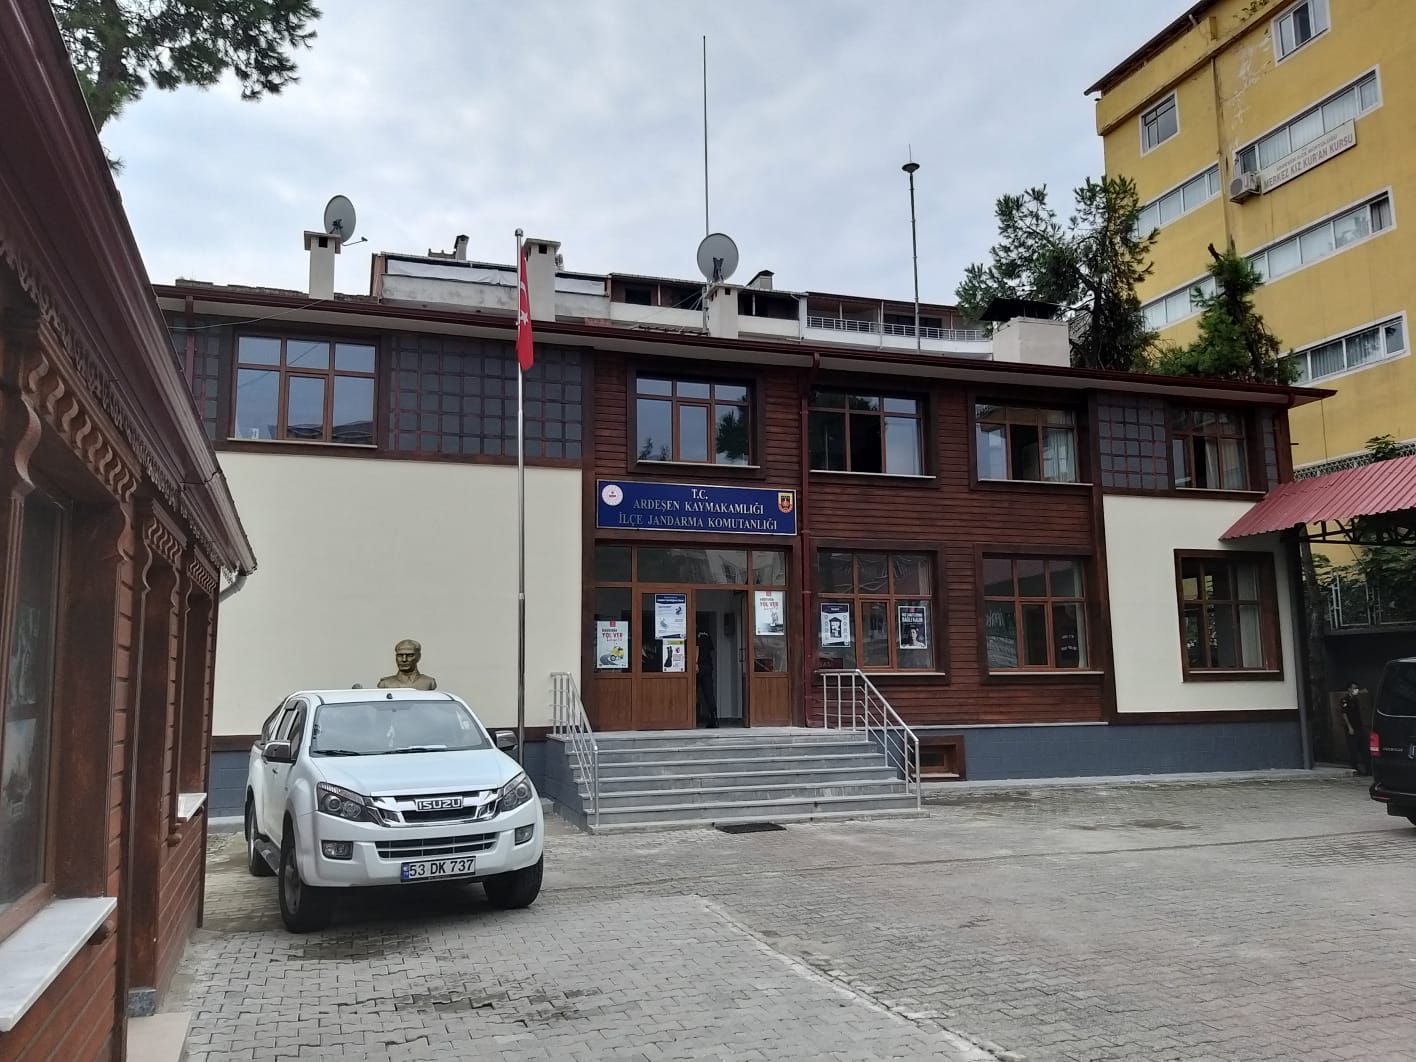 Ardeşen İlçe Jandarma Komutanlığı Hizmet Binası yöresel mimariye uygun hale getirildi